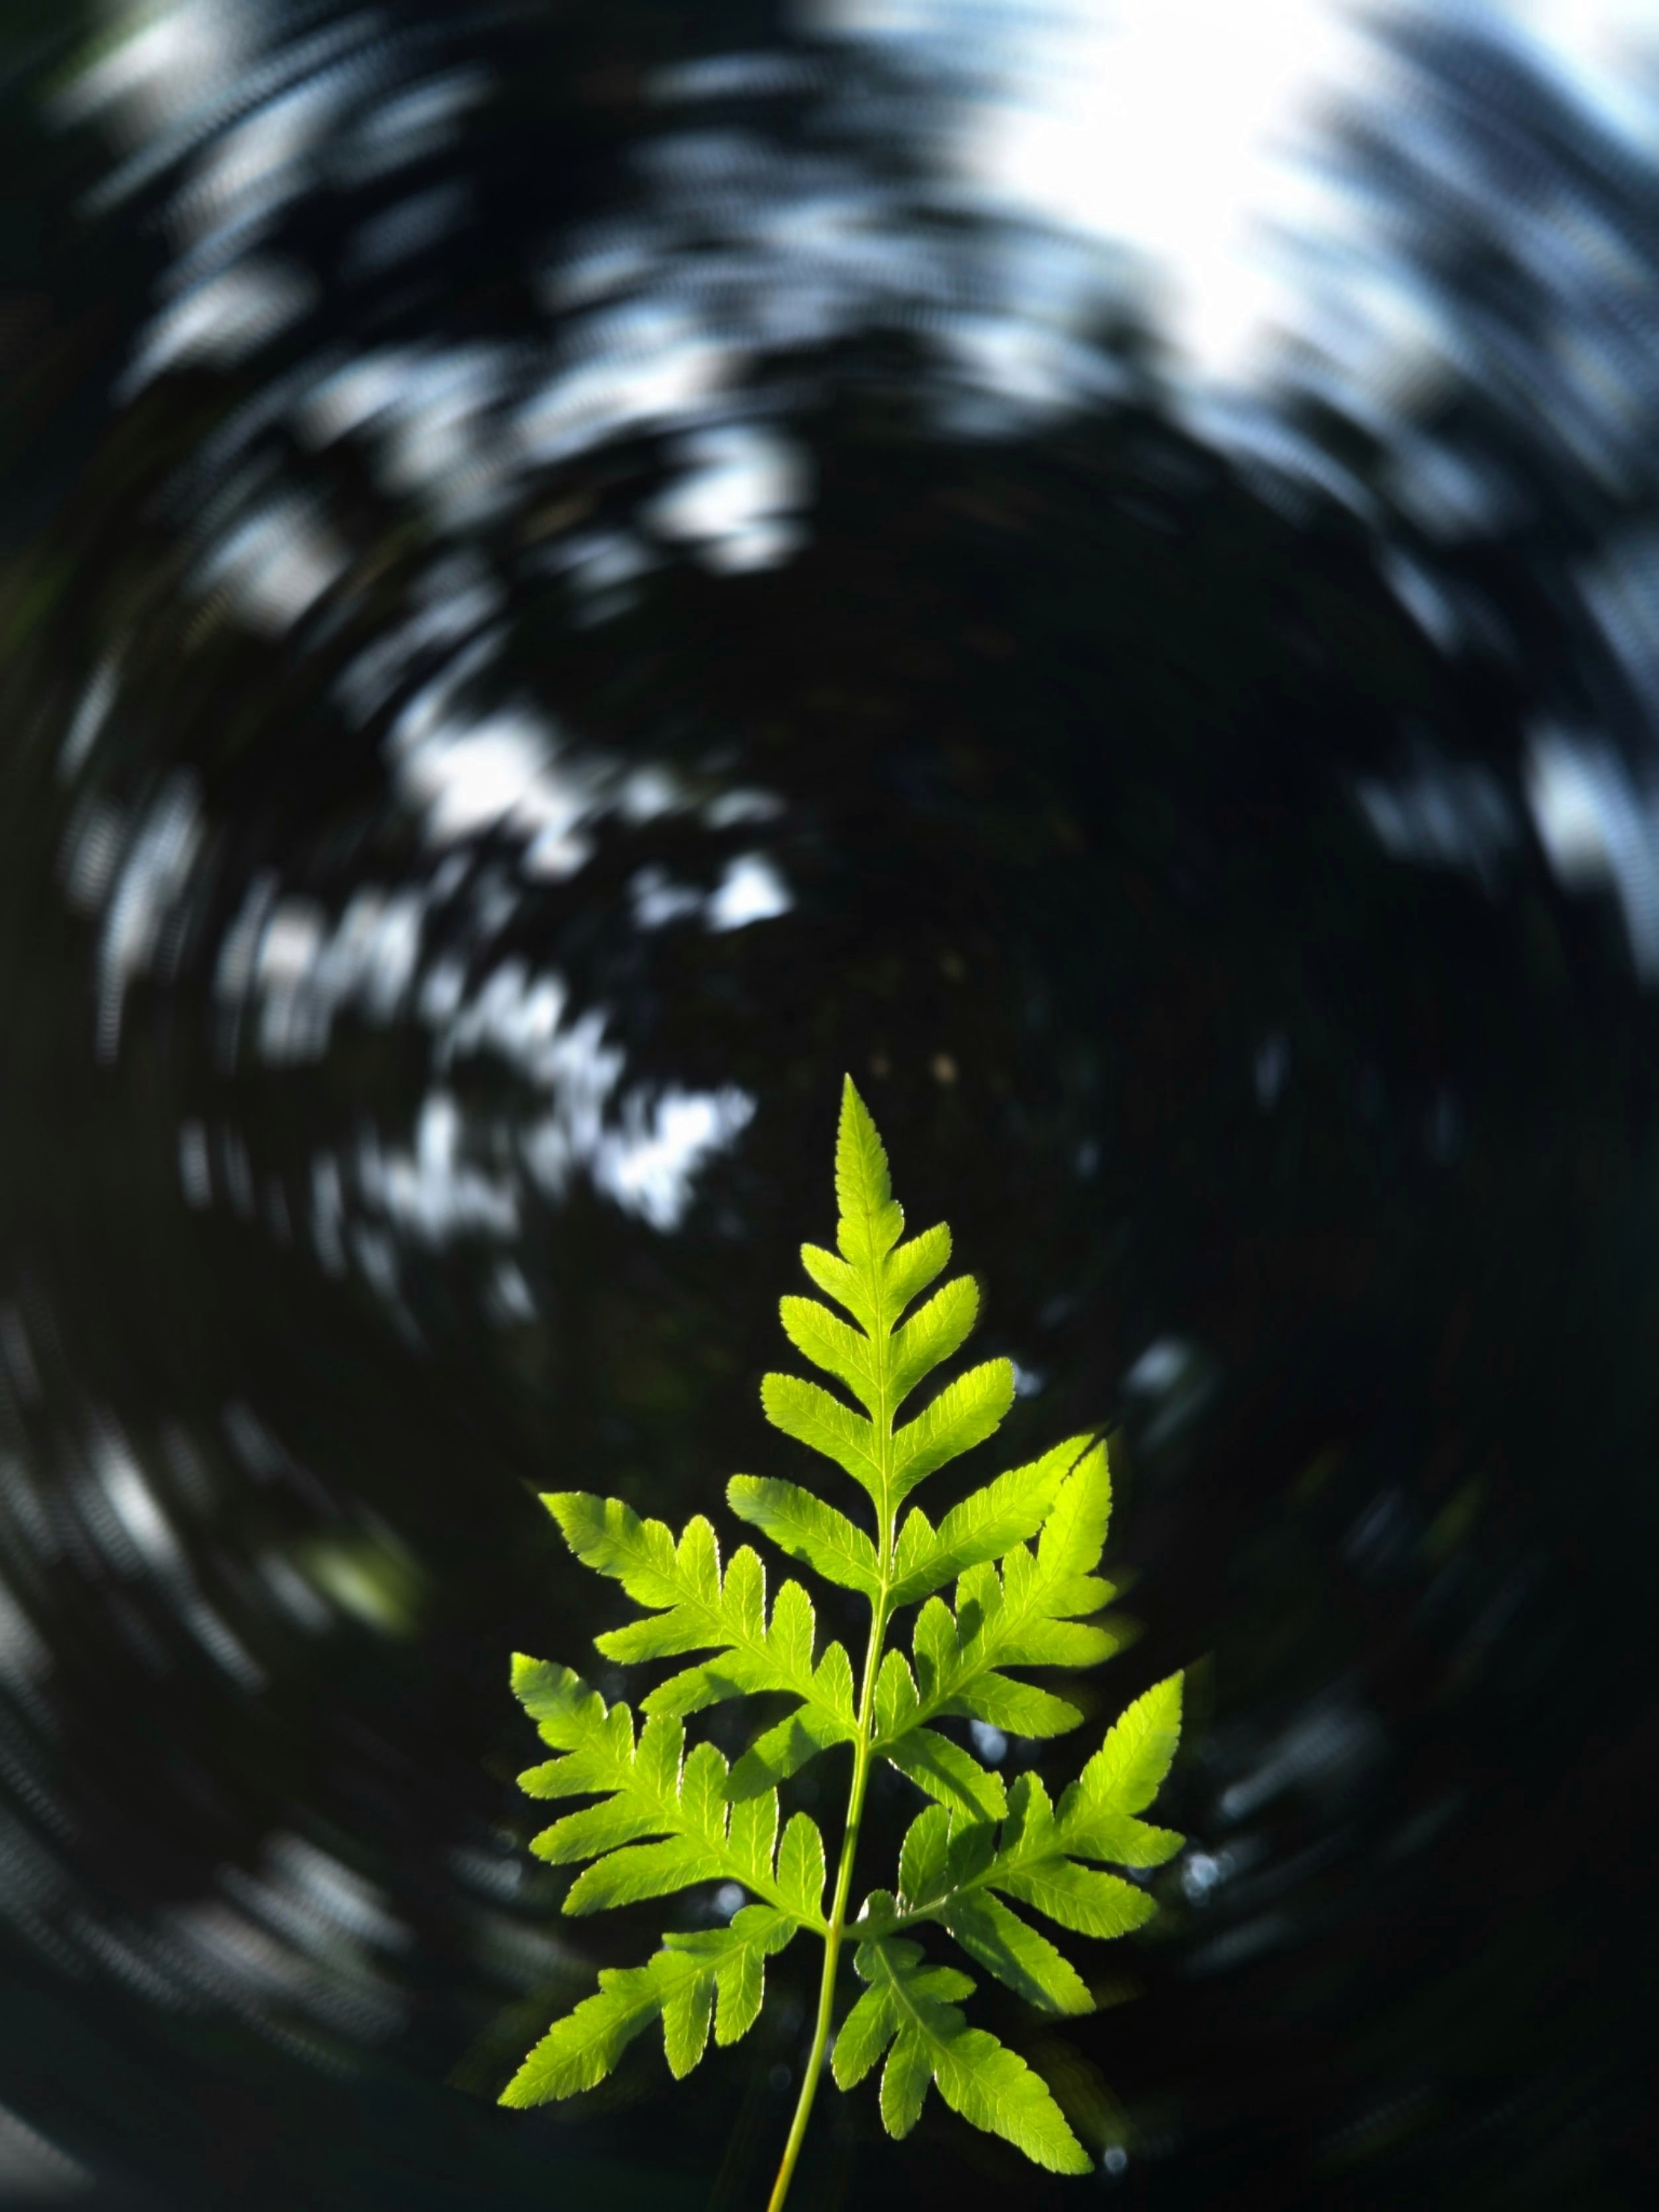 desktop Images nature, plant, blur, smooth, sheet, leaf, focus